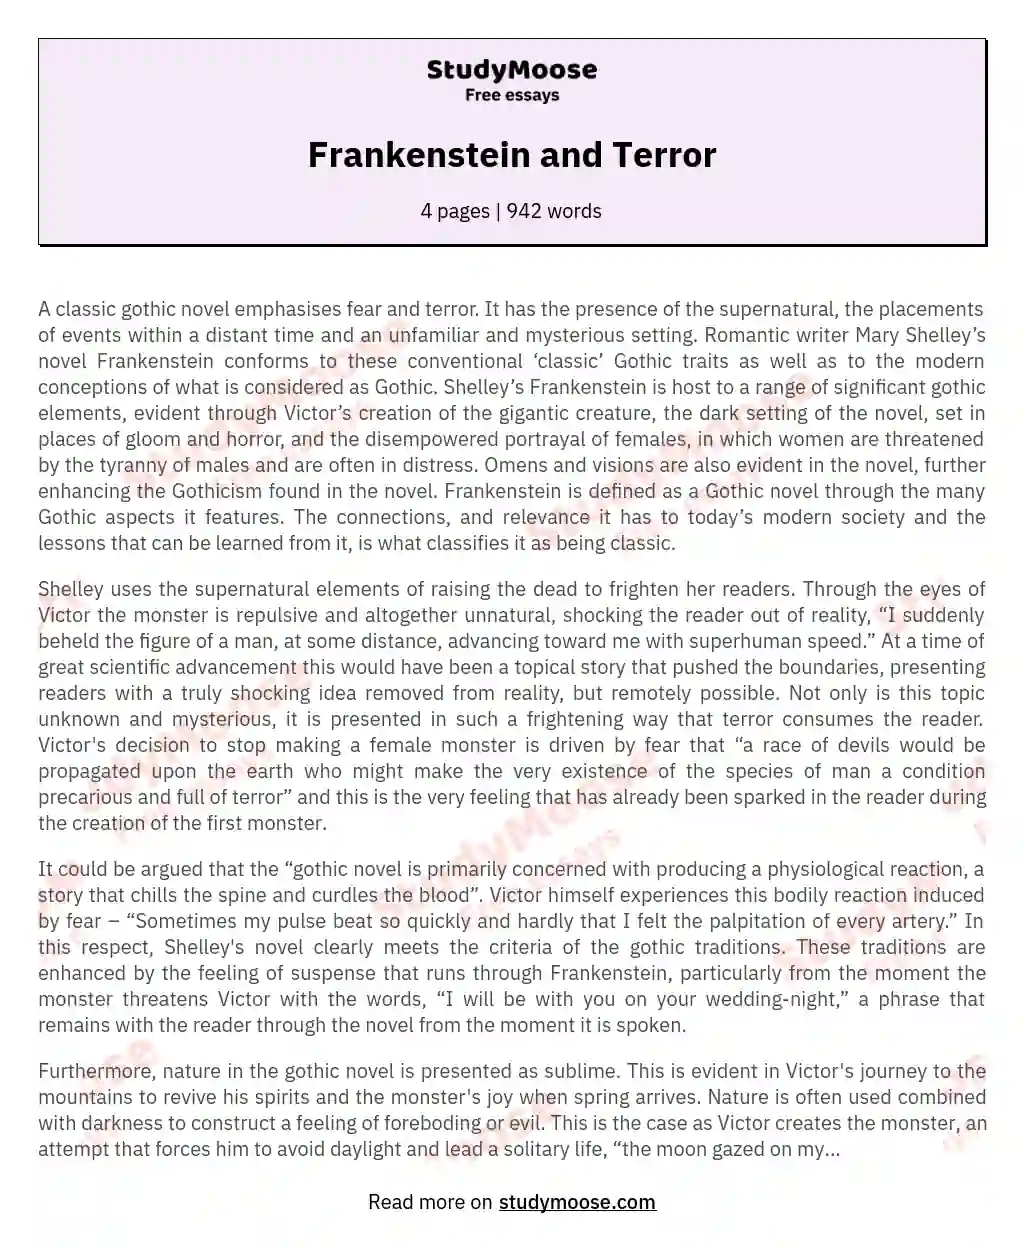 Frankenstein and Terror essay